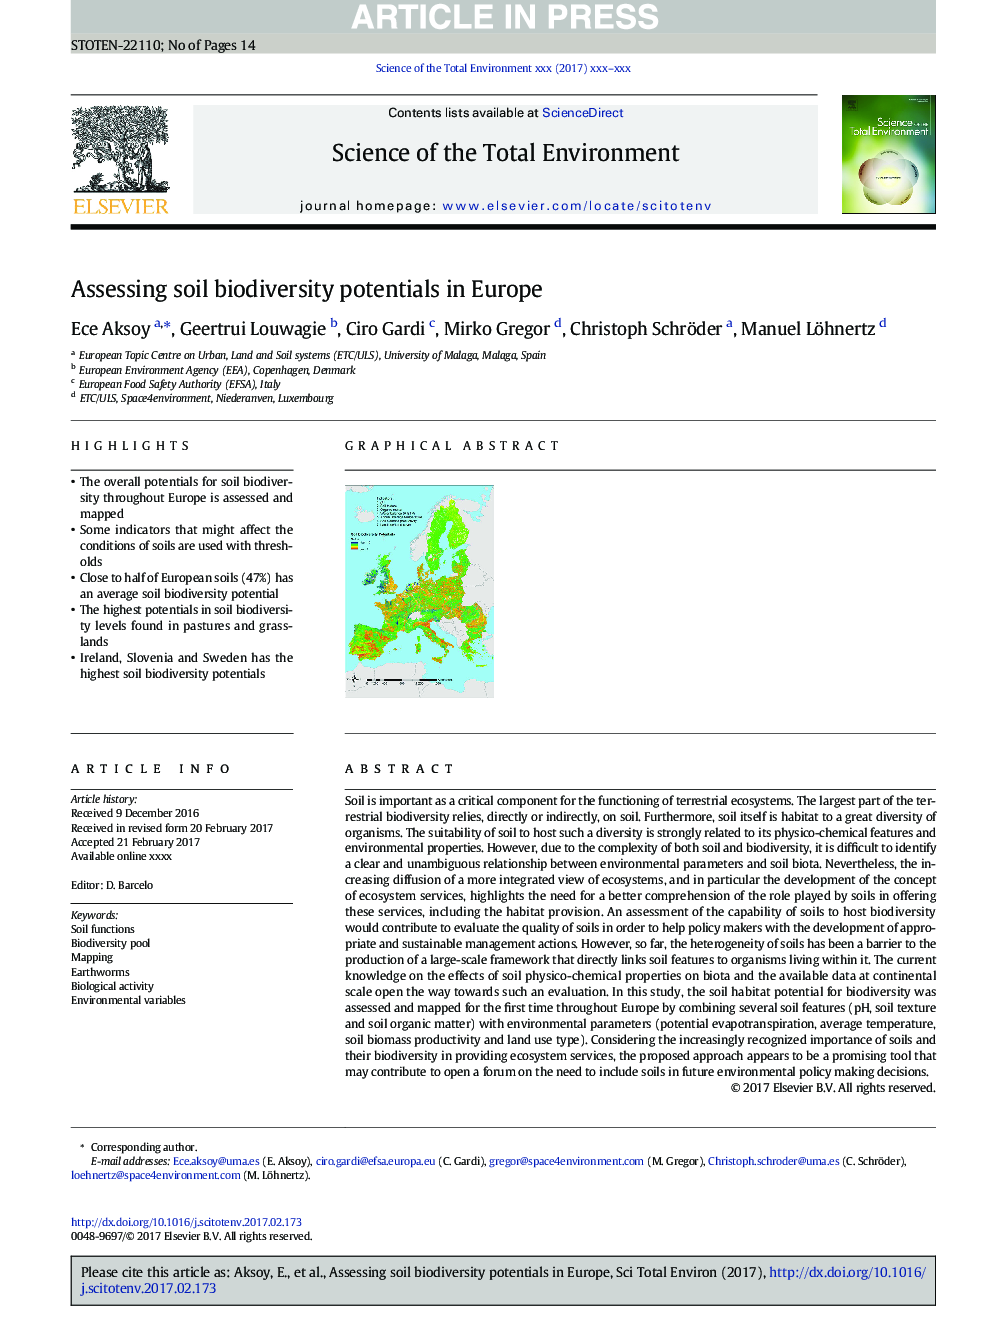 ارزیابی پتانسیل تنوع زیستی خاک در اروپا 